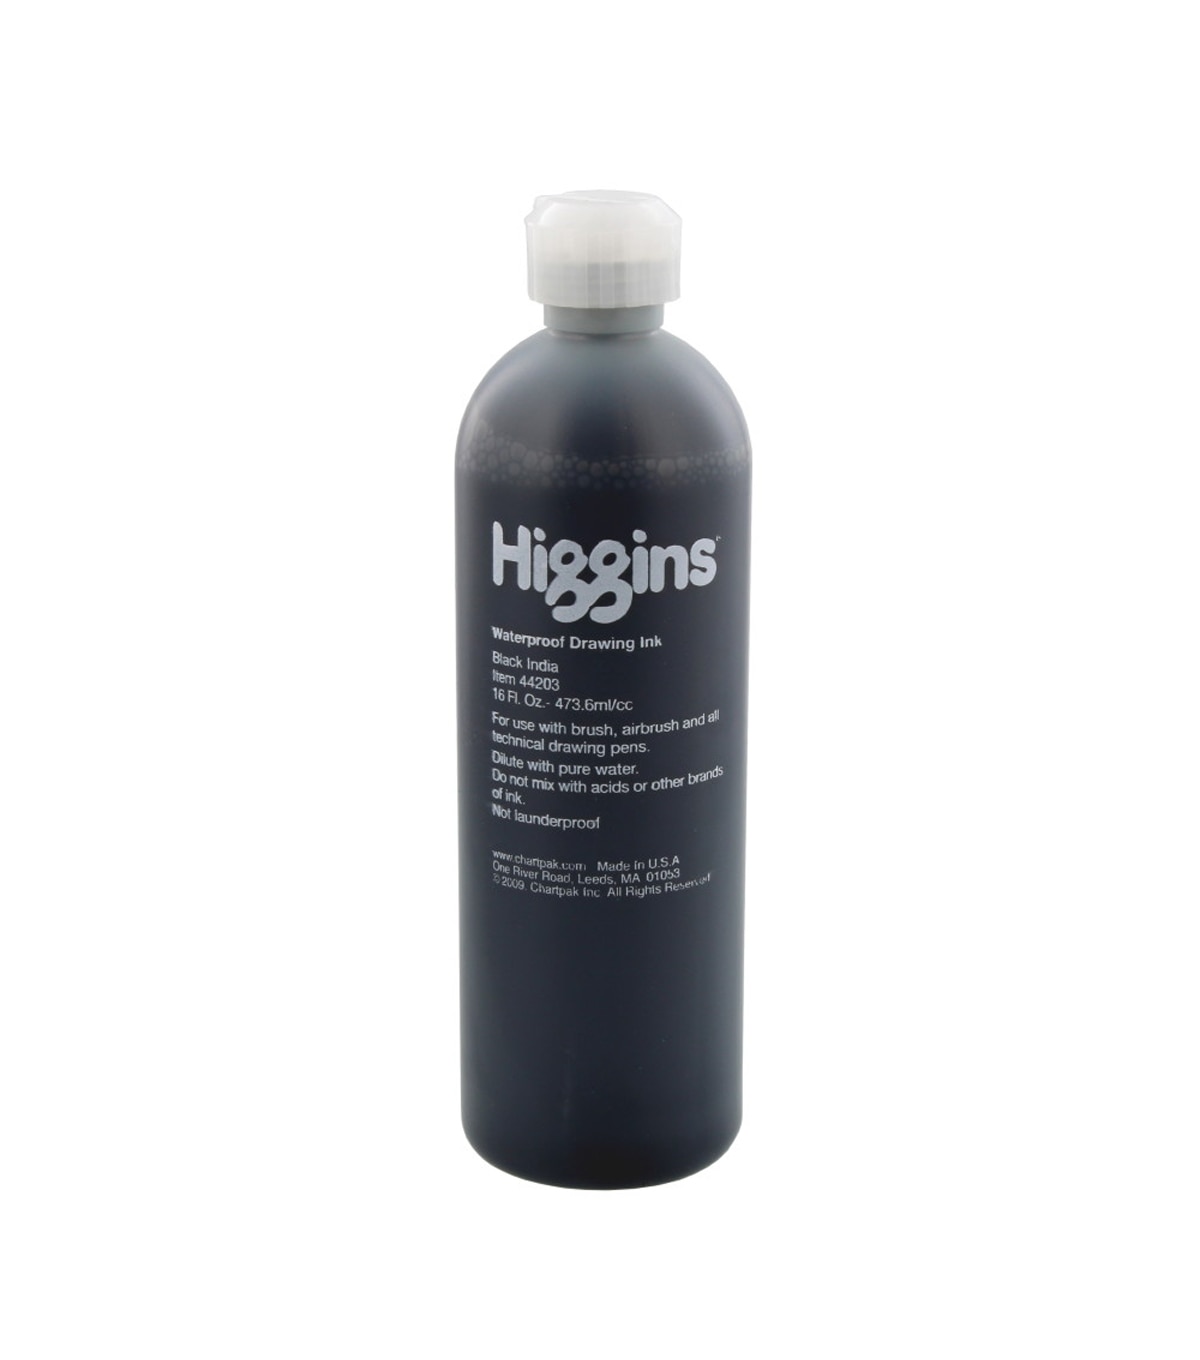 higgins india ink bottle